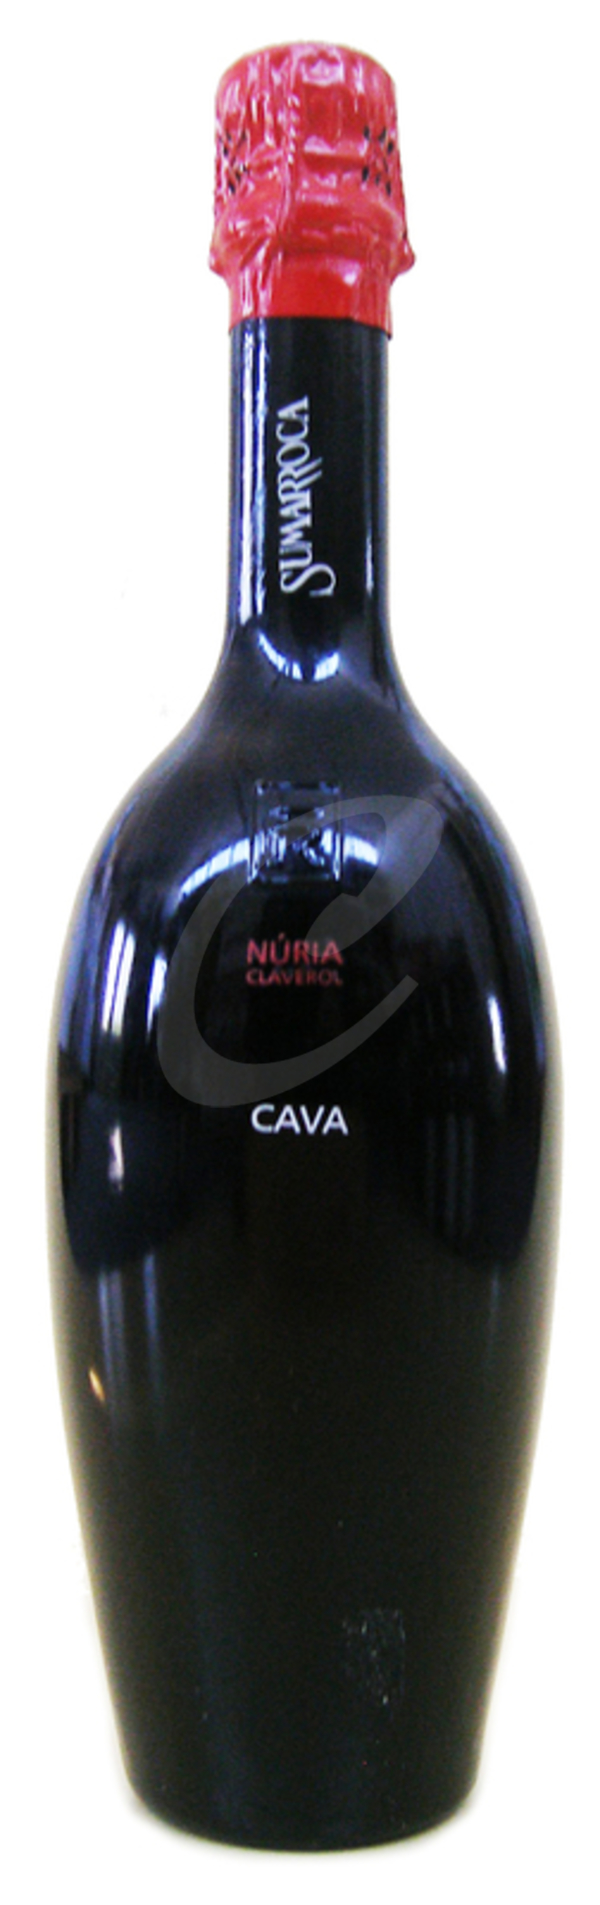 Cava Nuria Homenatge